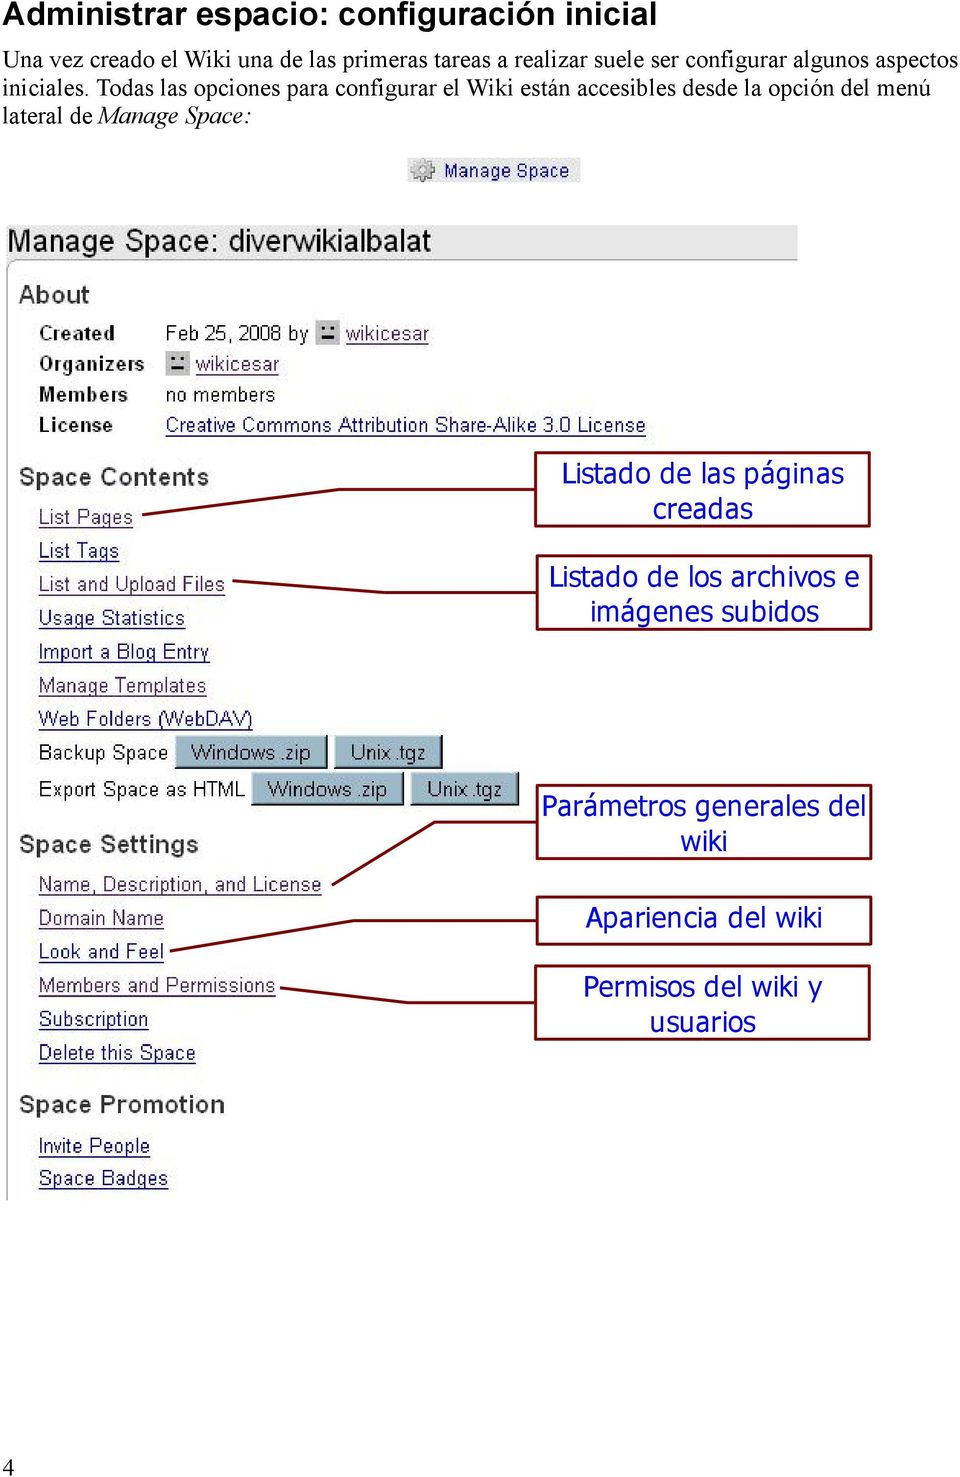 Todas las opciones para configurar el Wiki están accesibles desde la opción del menú lateral de Manage